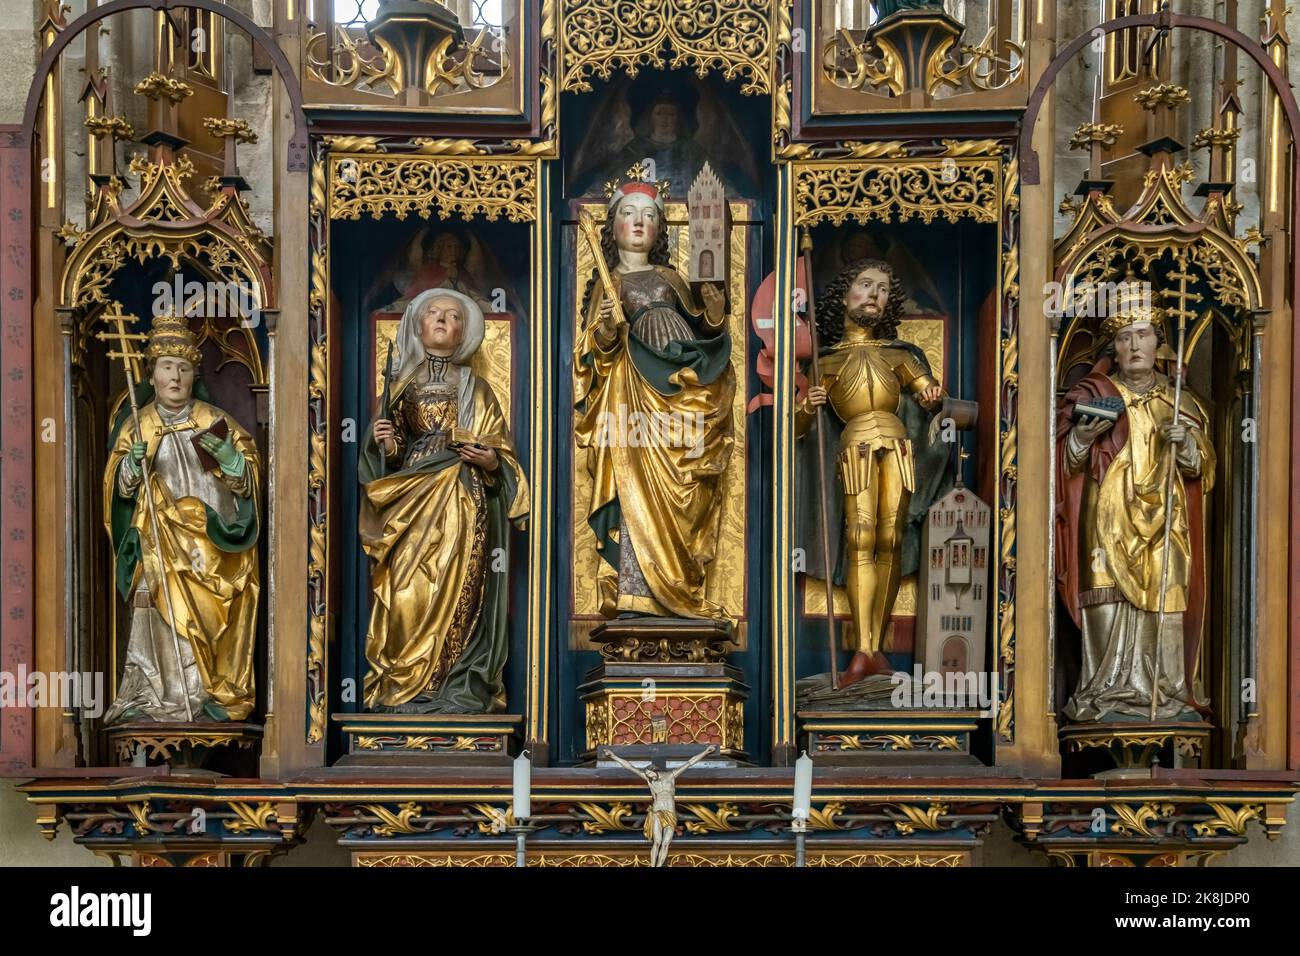 Kreuzaltar in der katholischen Stadtpfarrkirche St. Georg, Dinkelsbühl, Mittelfranken, Bayern, Deutschland  |  Cross altar in the catholic city parish Stock Photo